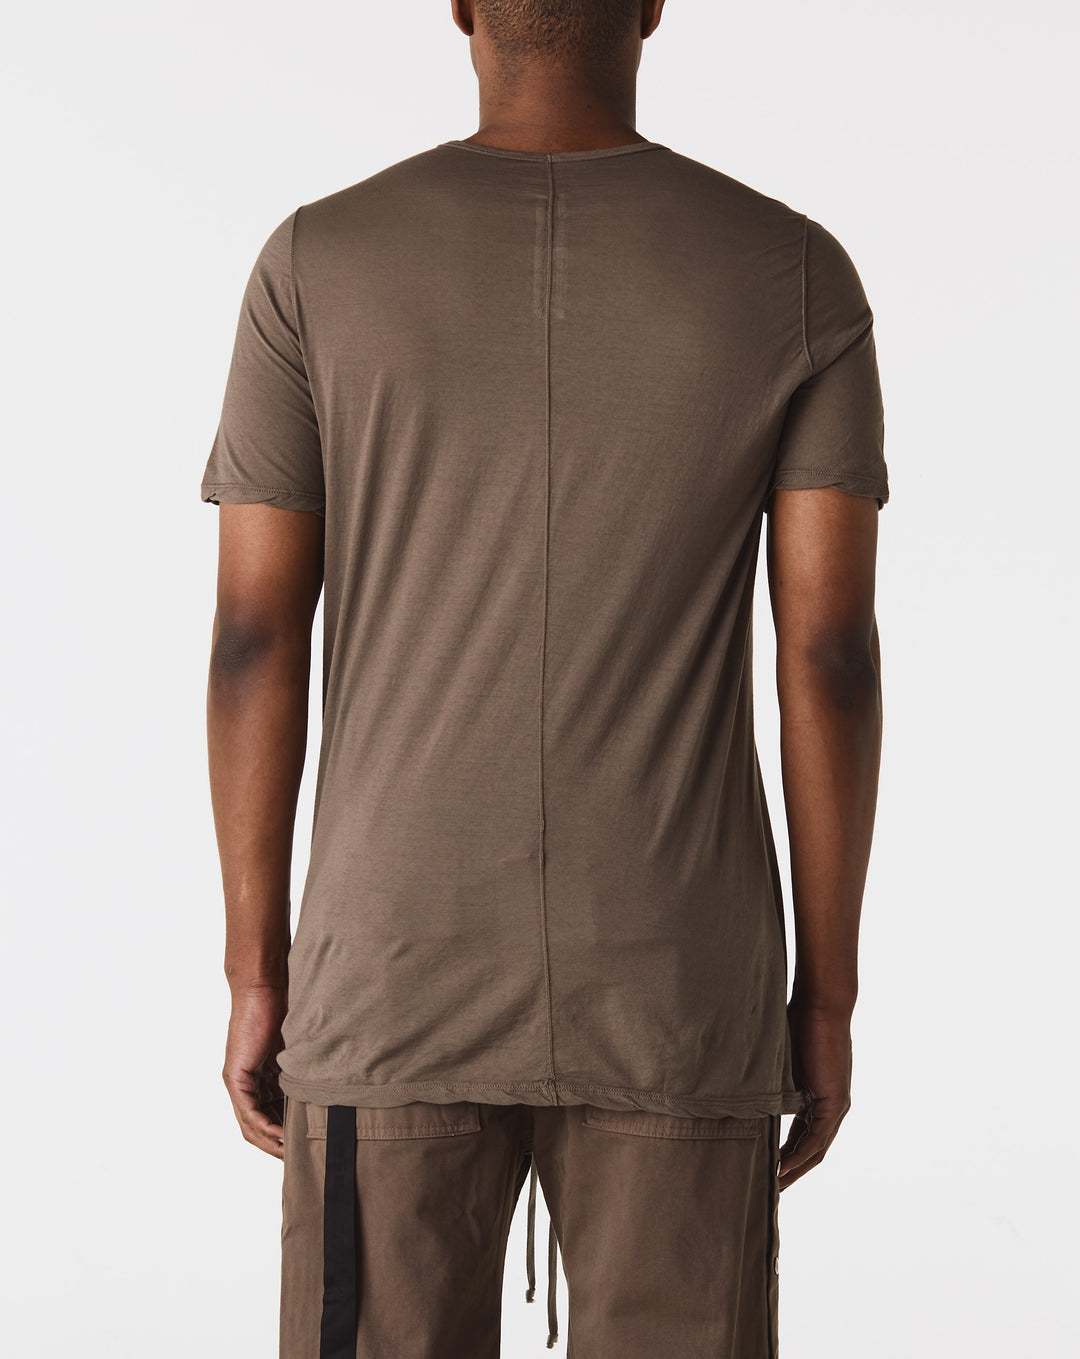 Casablanca Table Tennis Club silk shirt collar Level T-Shirt collar - Cheap Urlfreeze Jordan outlet